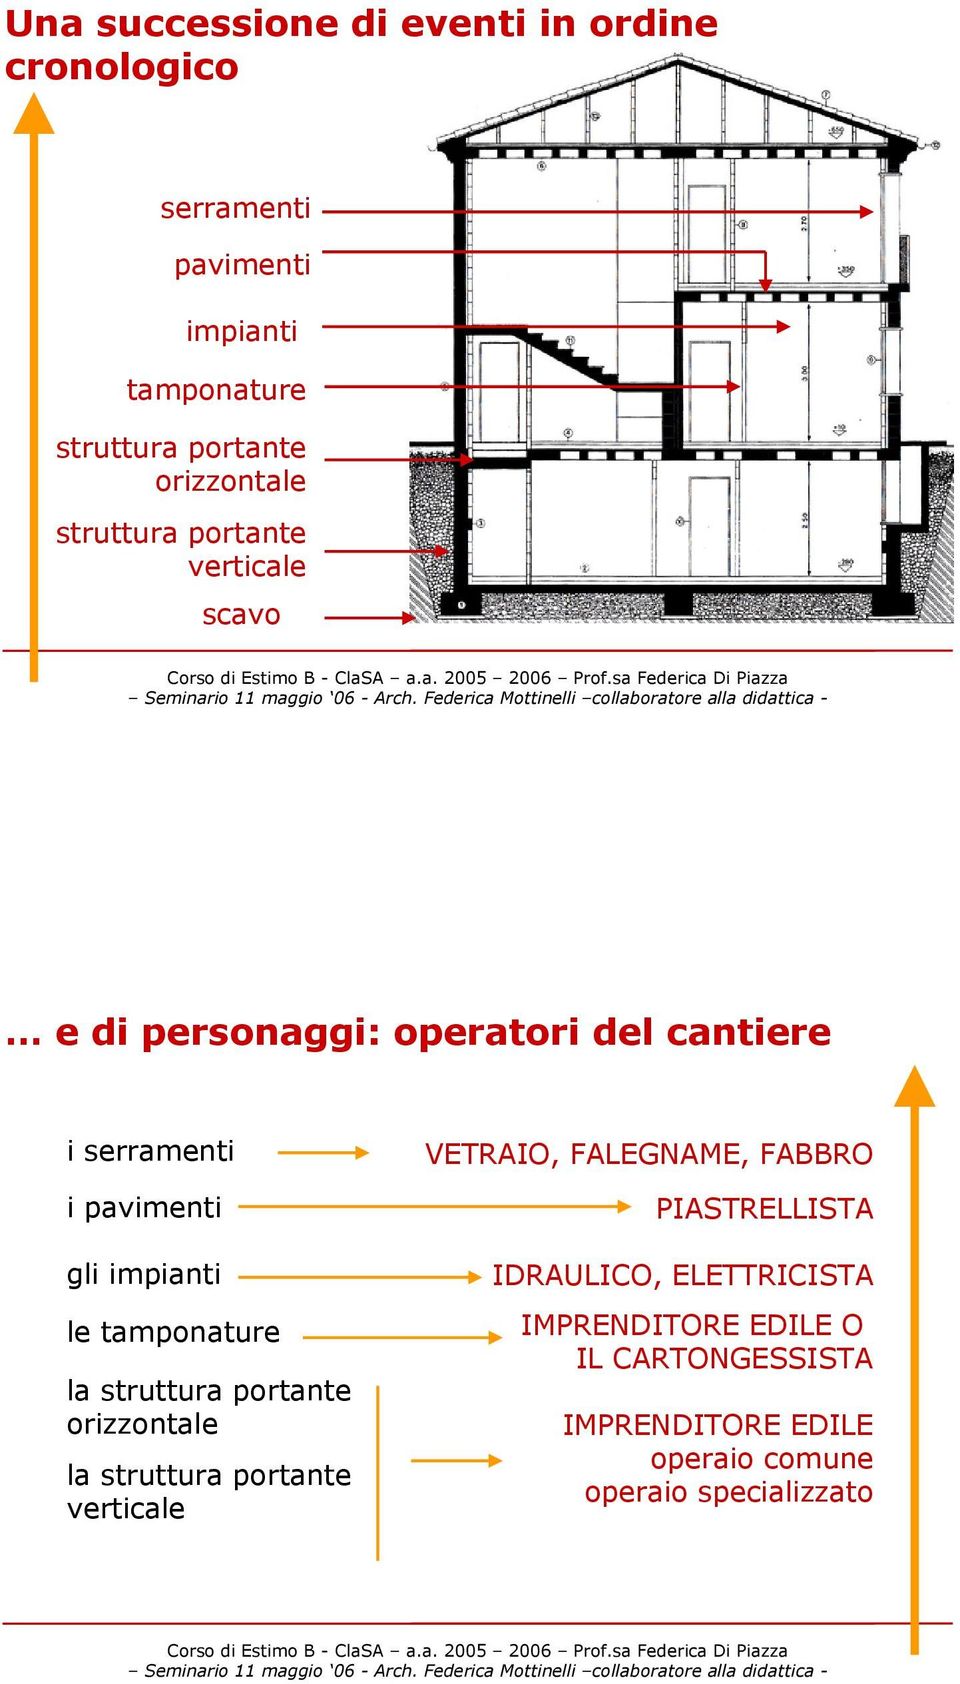 tamponature la struttura portante orizzontale la struttura portante verticale VETRAIO, FALEGNAME, FABBRO PIASTRELLISTA